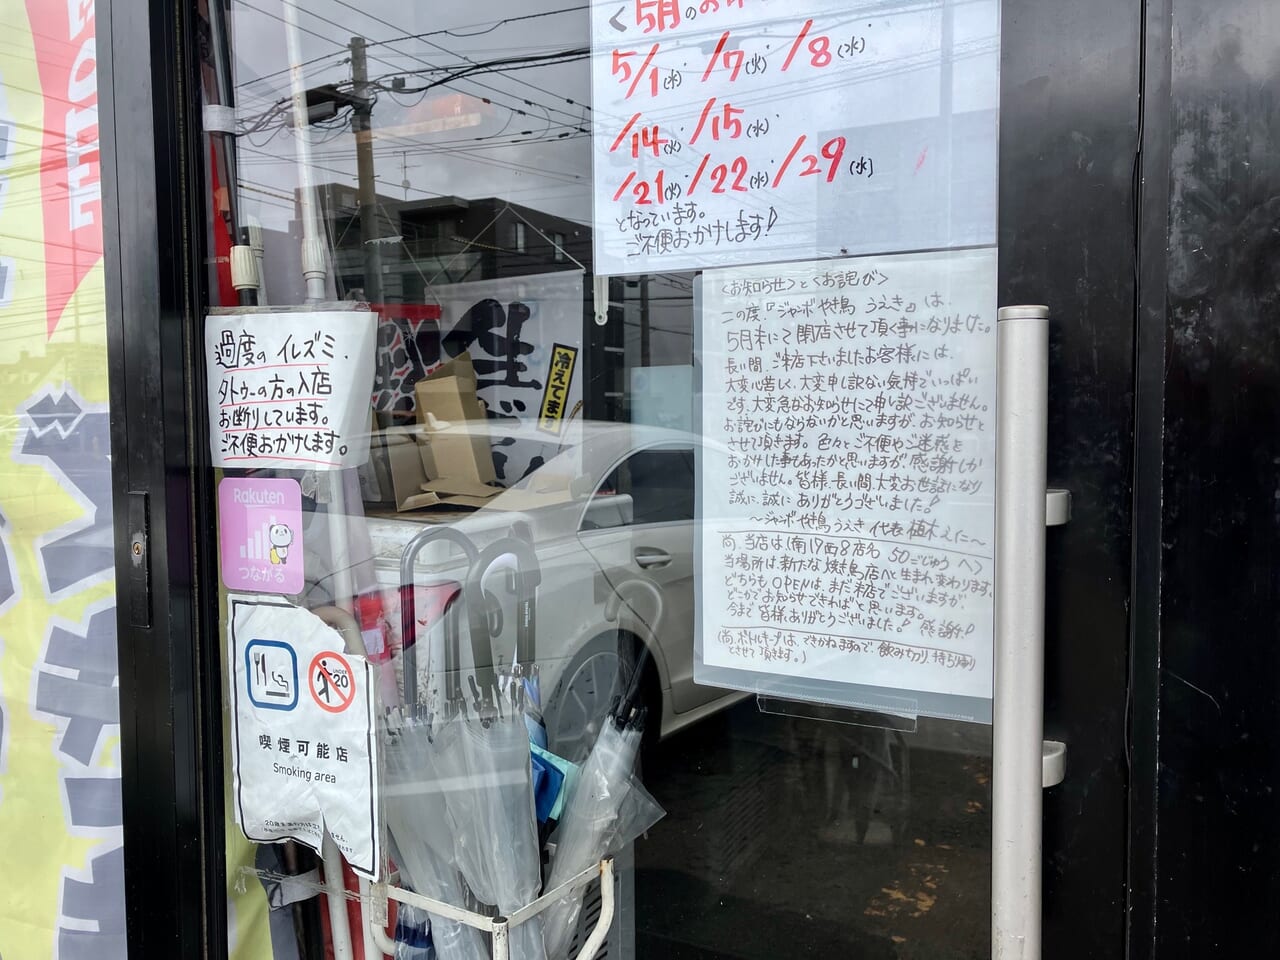 元町で人気の焼き鳥屋さん「ジャンボやき鳥 うえき」の店頭に貼り紙がありました。